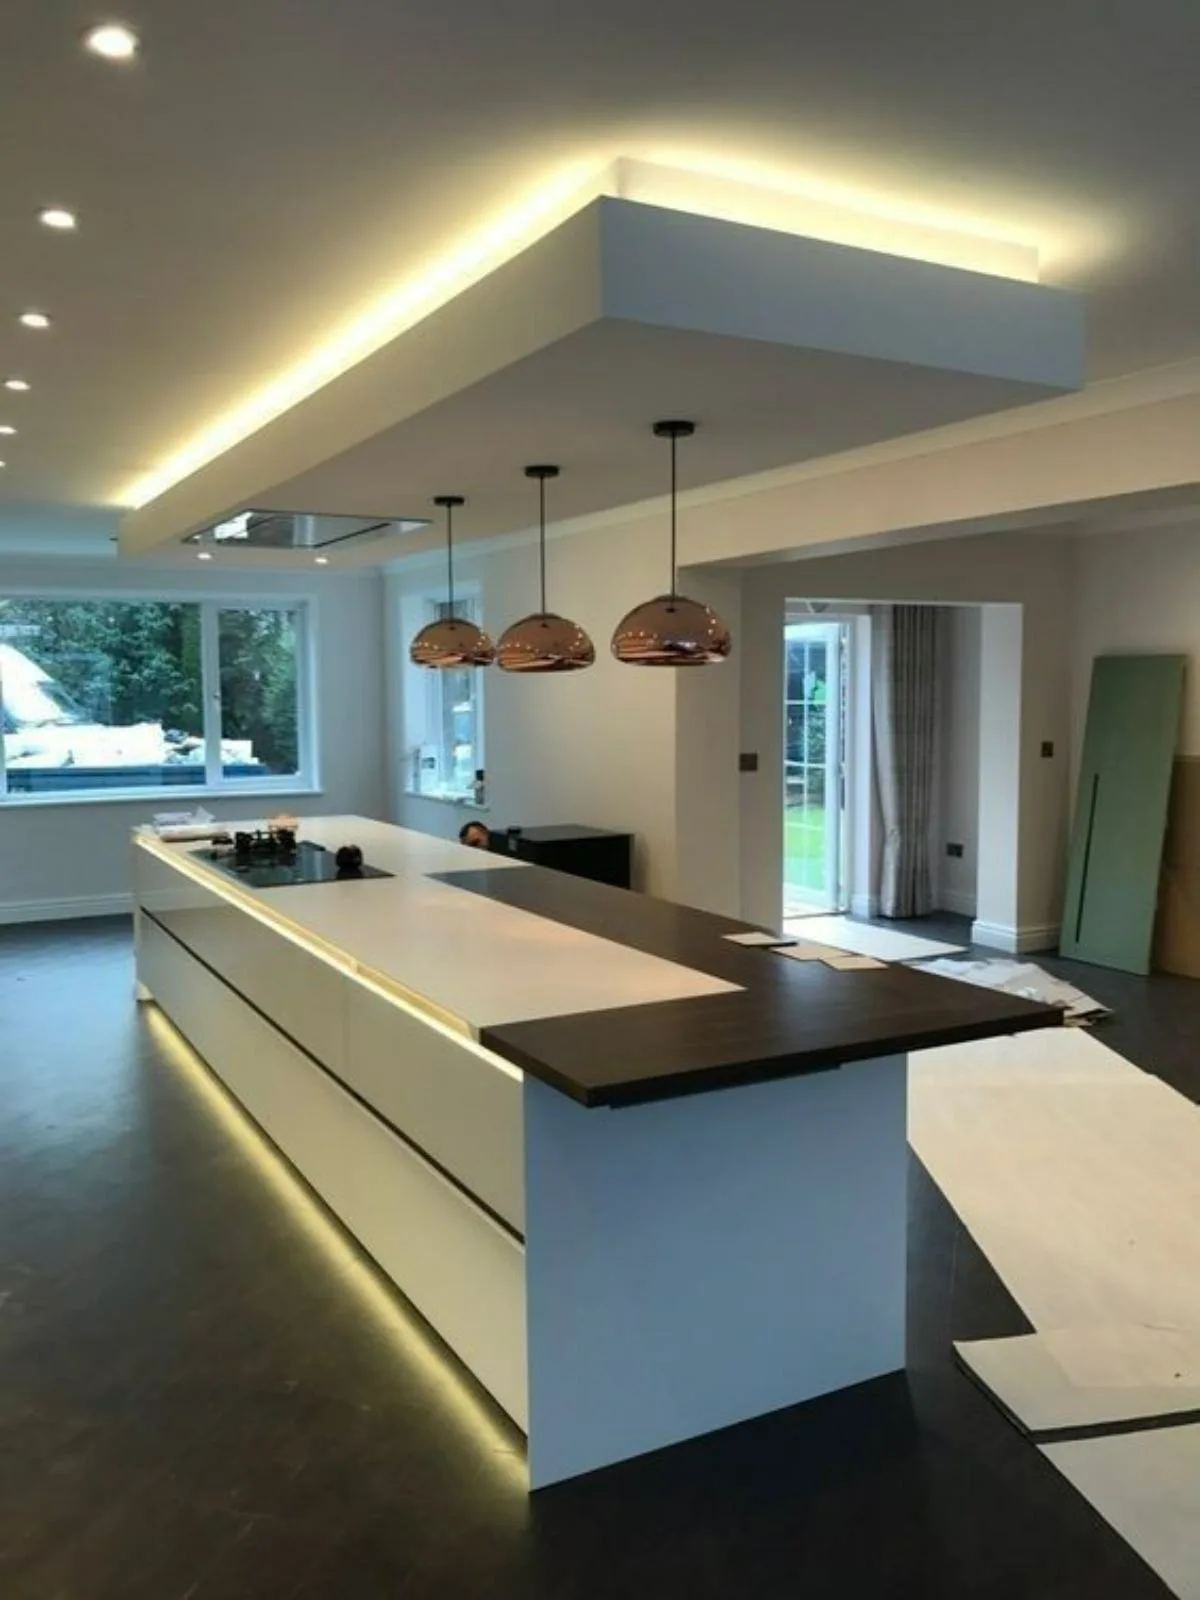 نورپردازی ترکیبی مخفی و هالوژنی سقف آشپزخانه مدرن